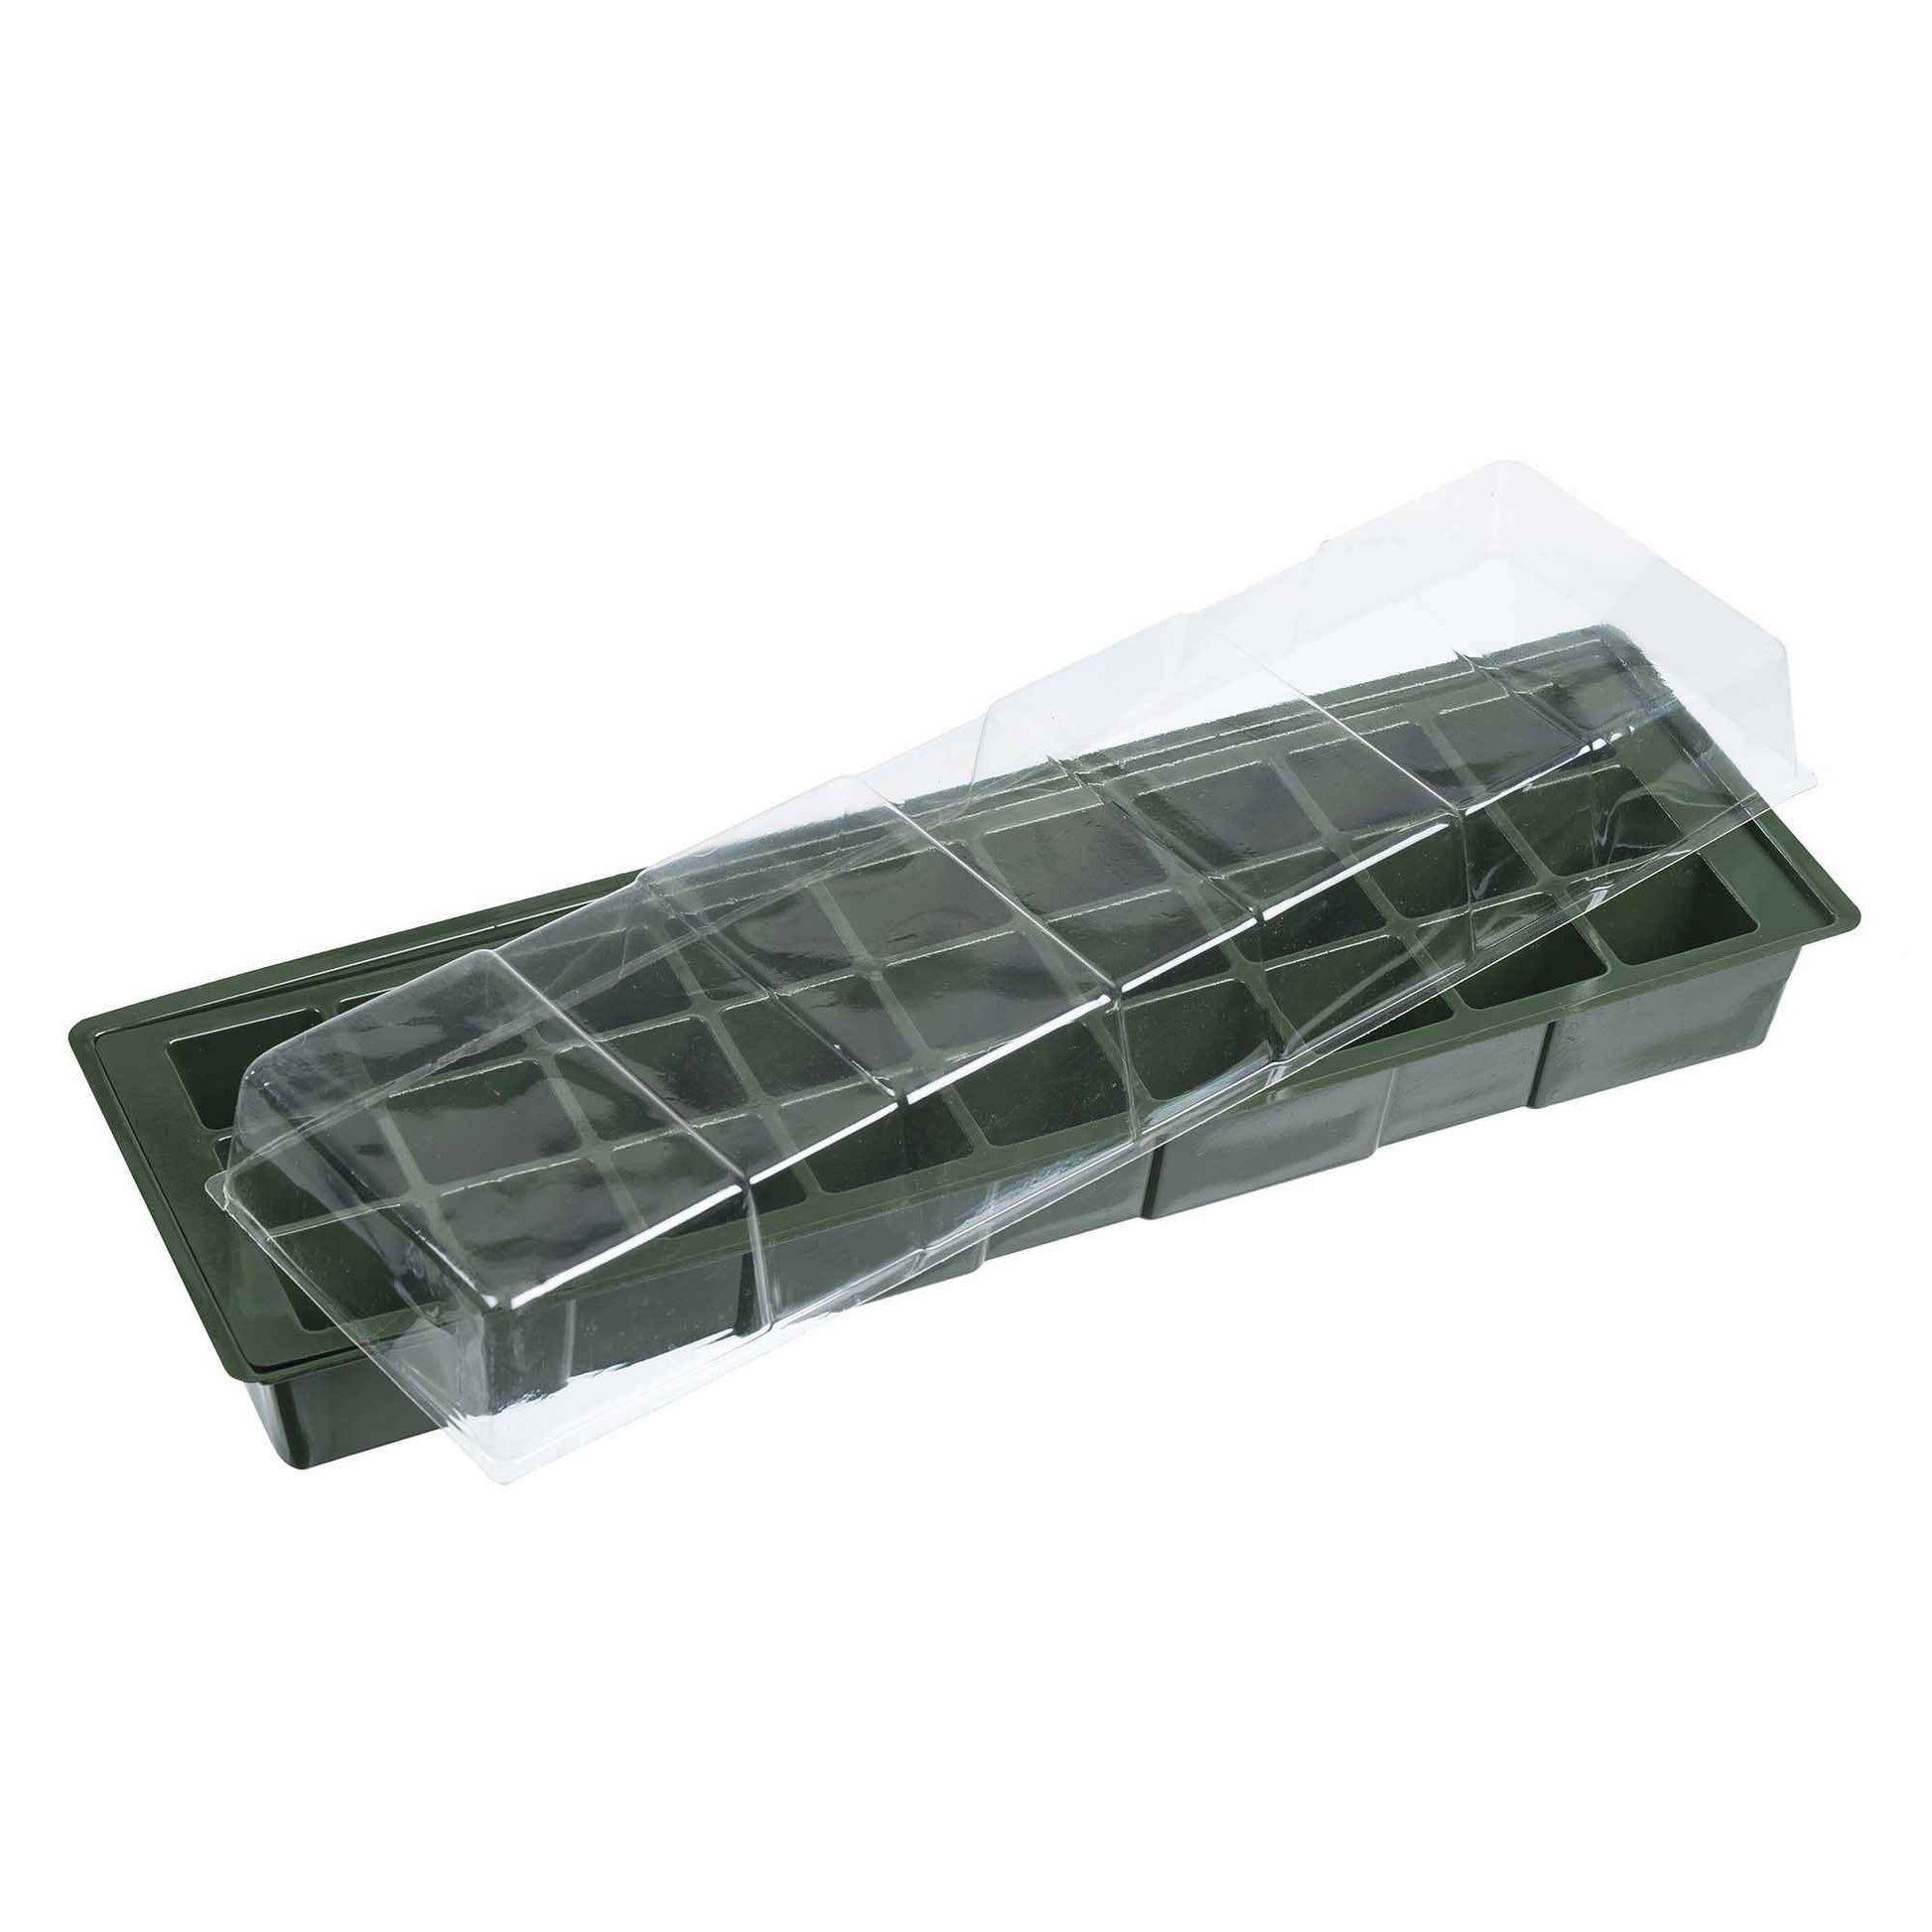 Nature Fensterbank-Anzuchtkasten aus Kunststoff grün - Anzuchtsets